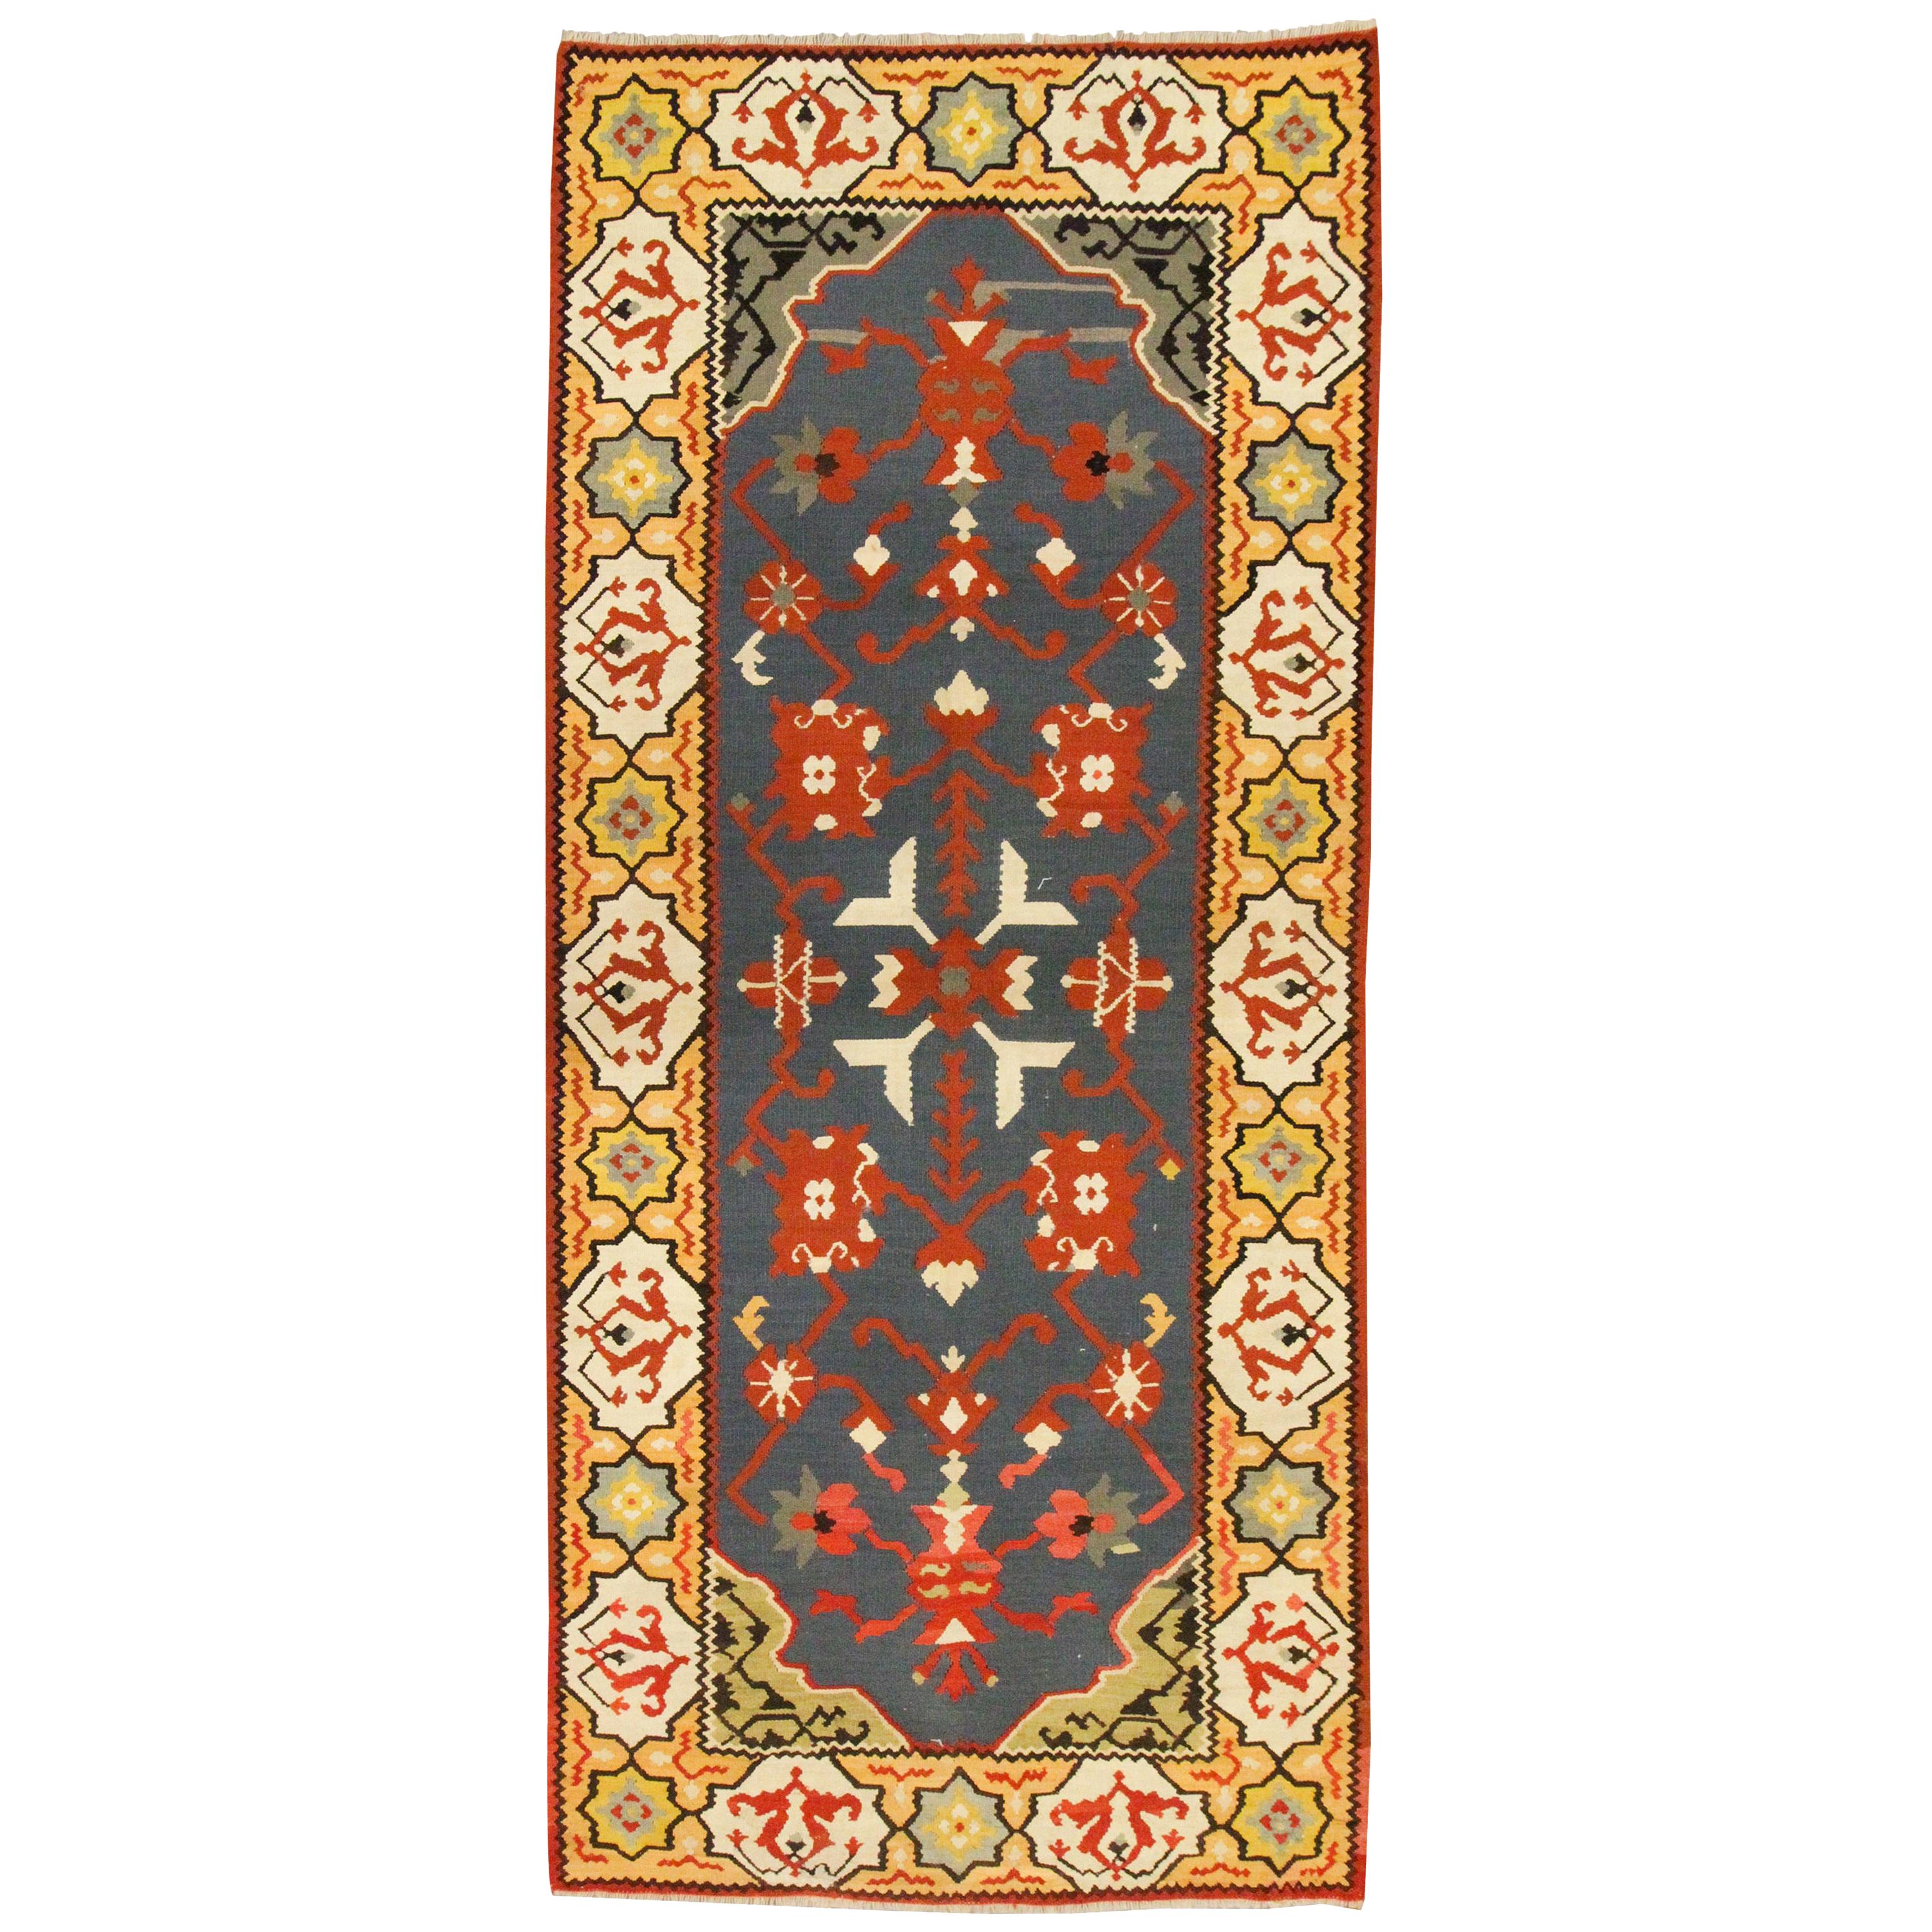 Handgefertigter Teppich aus Wolle und Kelim, türkischer Pirot, flach gewebter blau-goldener Teppich